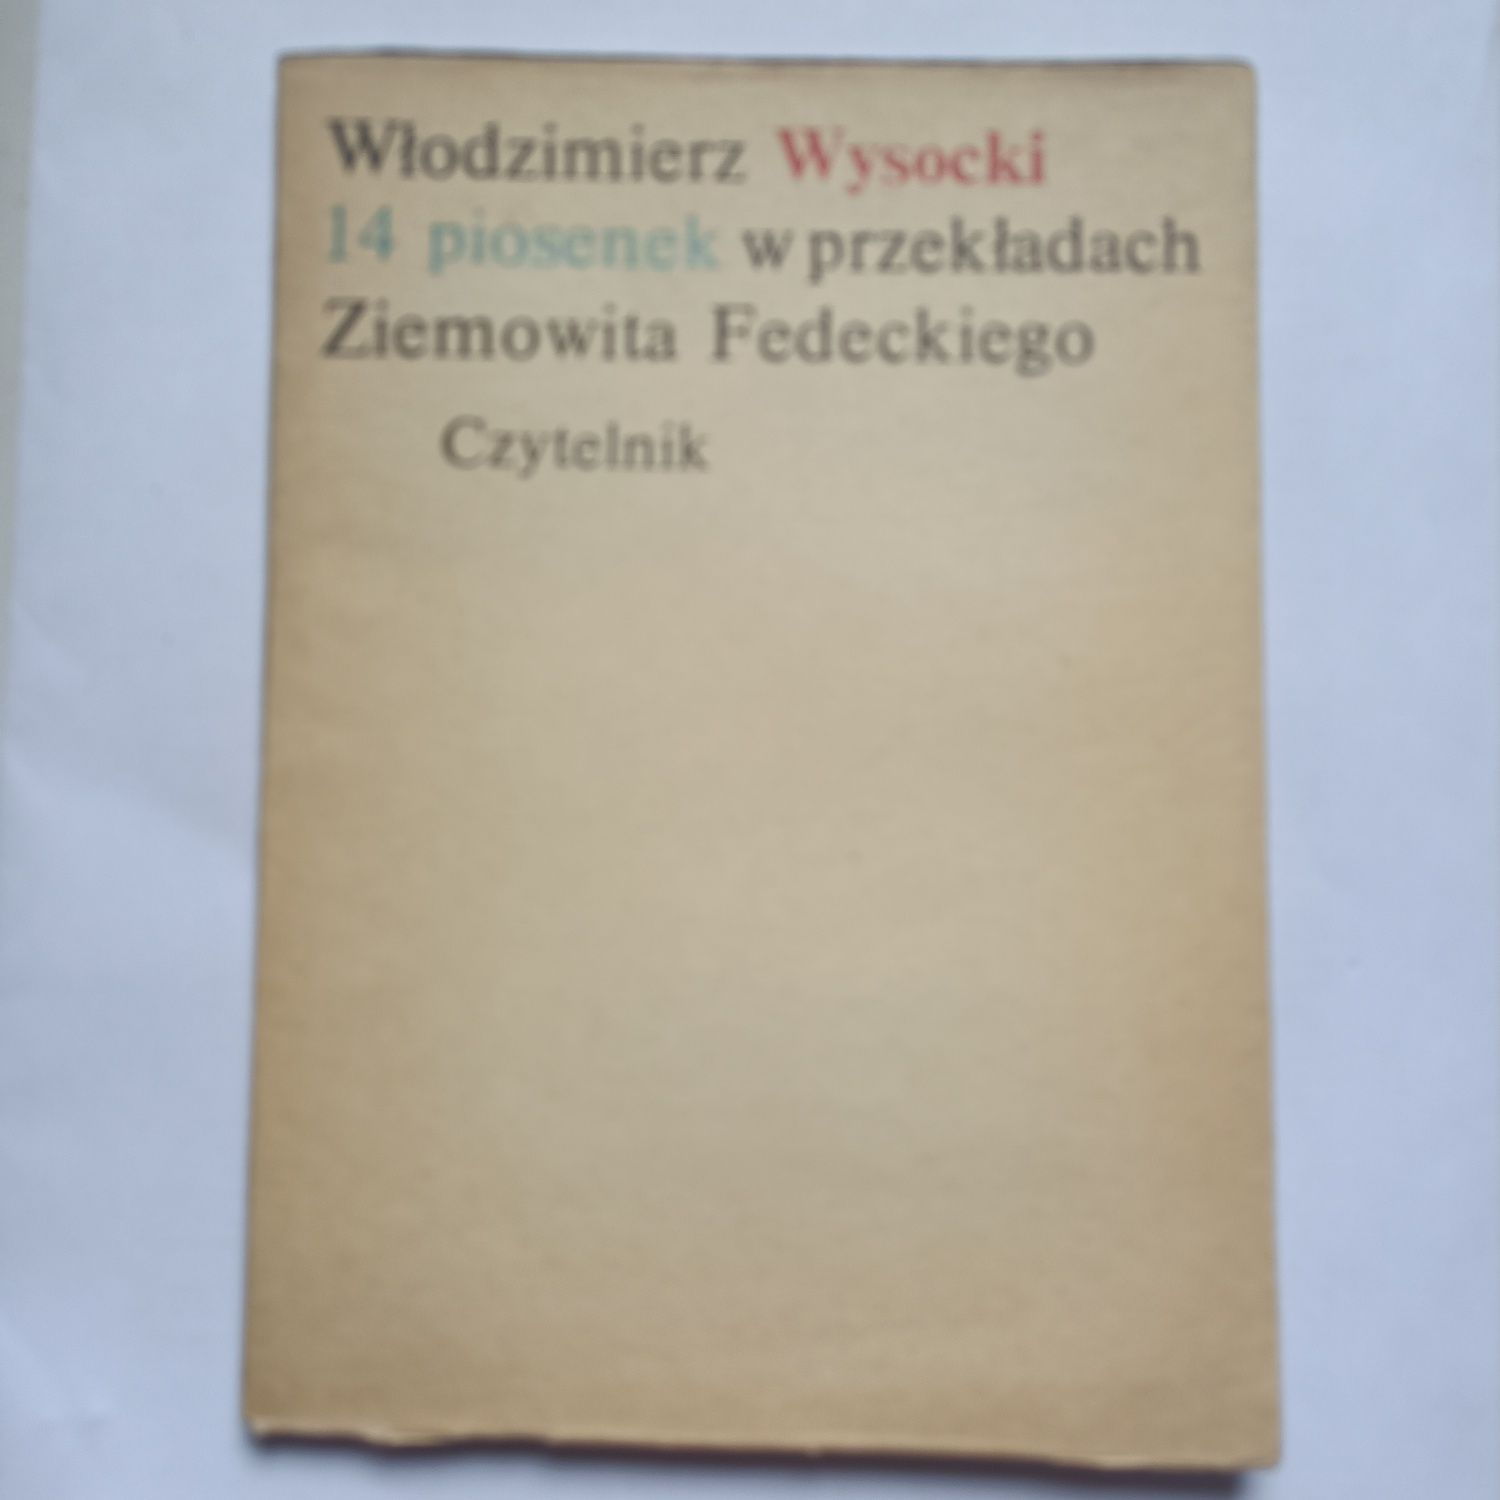 Włodzimierz Wysocki 14 piosenek w przekładach Ziemowita Fedeckiego